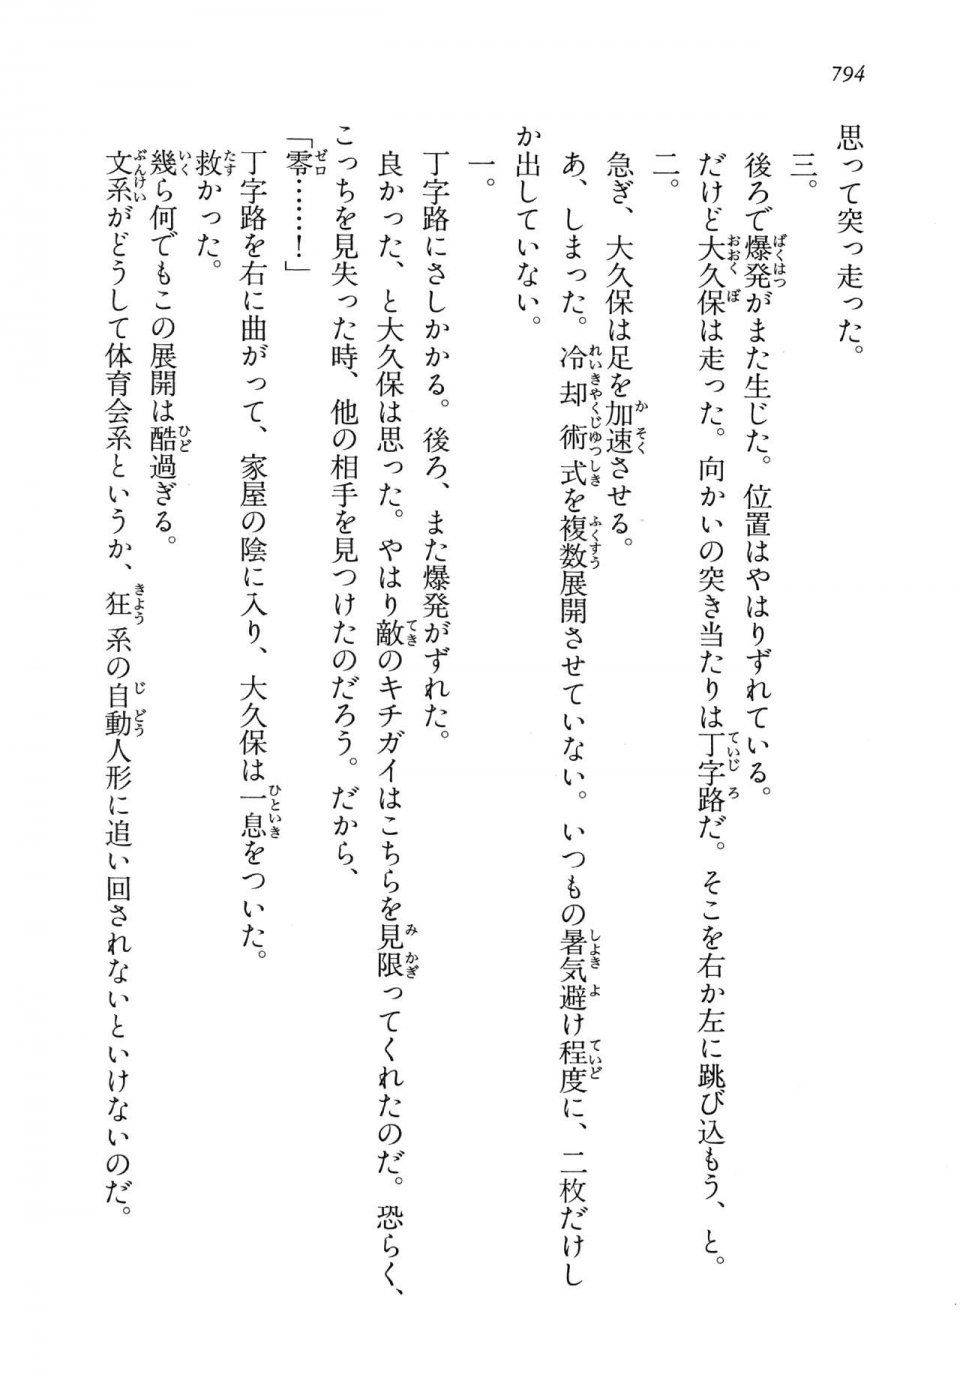 Kyoukai Senjou no Horizon LN Vol 14(6B) - Photo #794